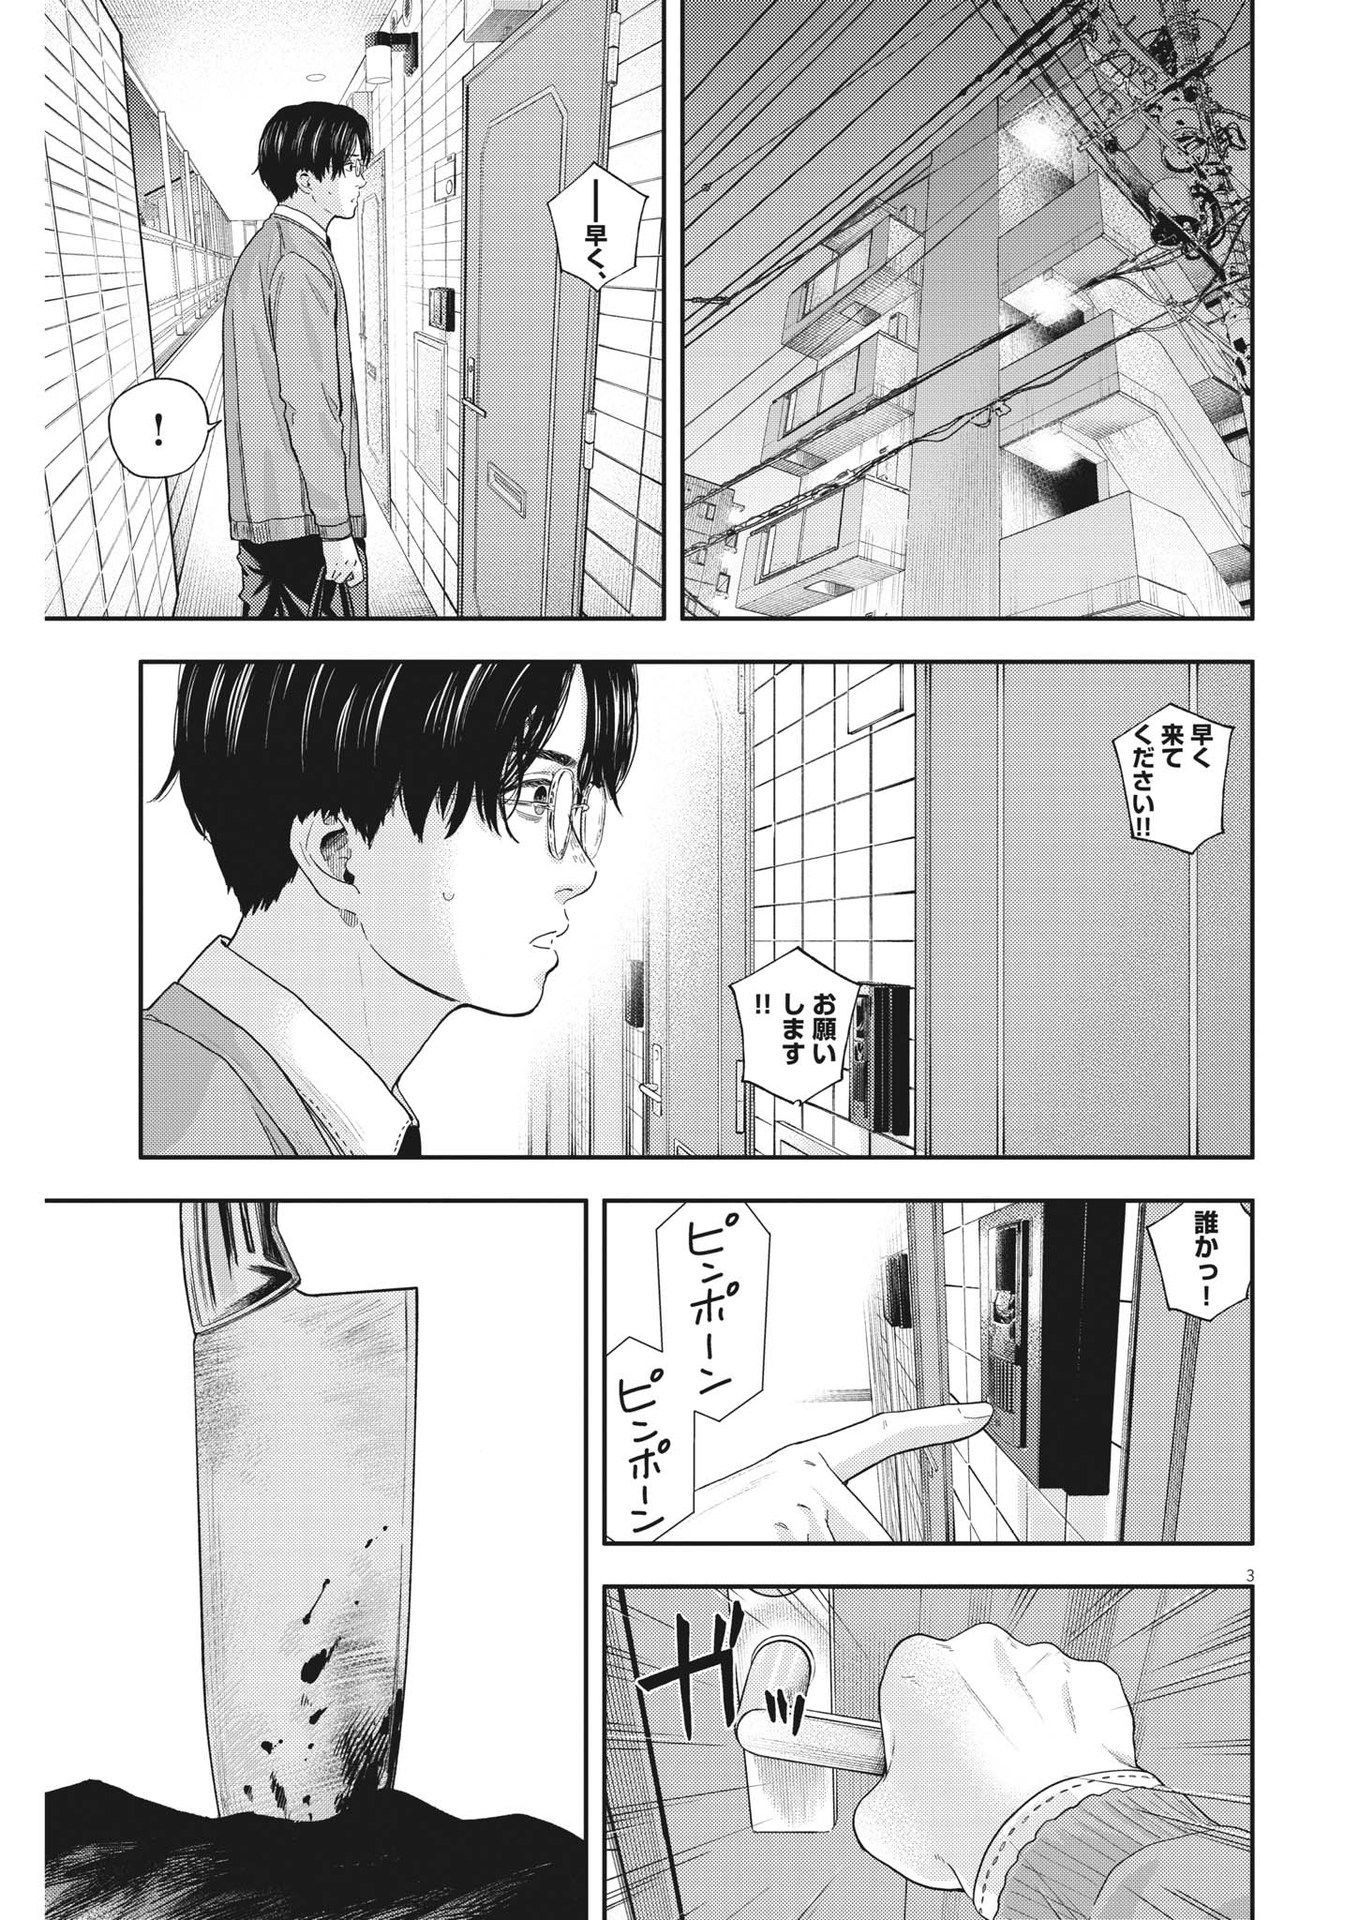 Yumenashi-sensei no Shinroshidou - Chapter 17 - Page 3